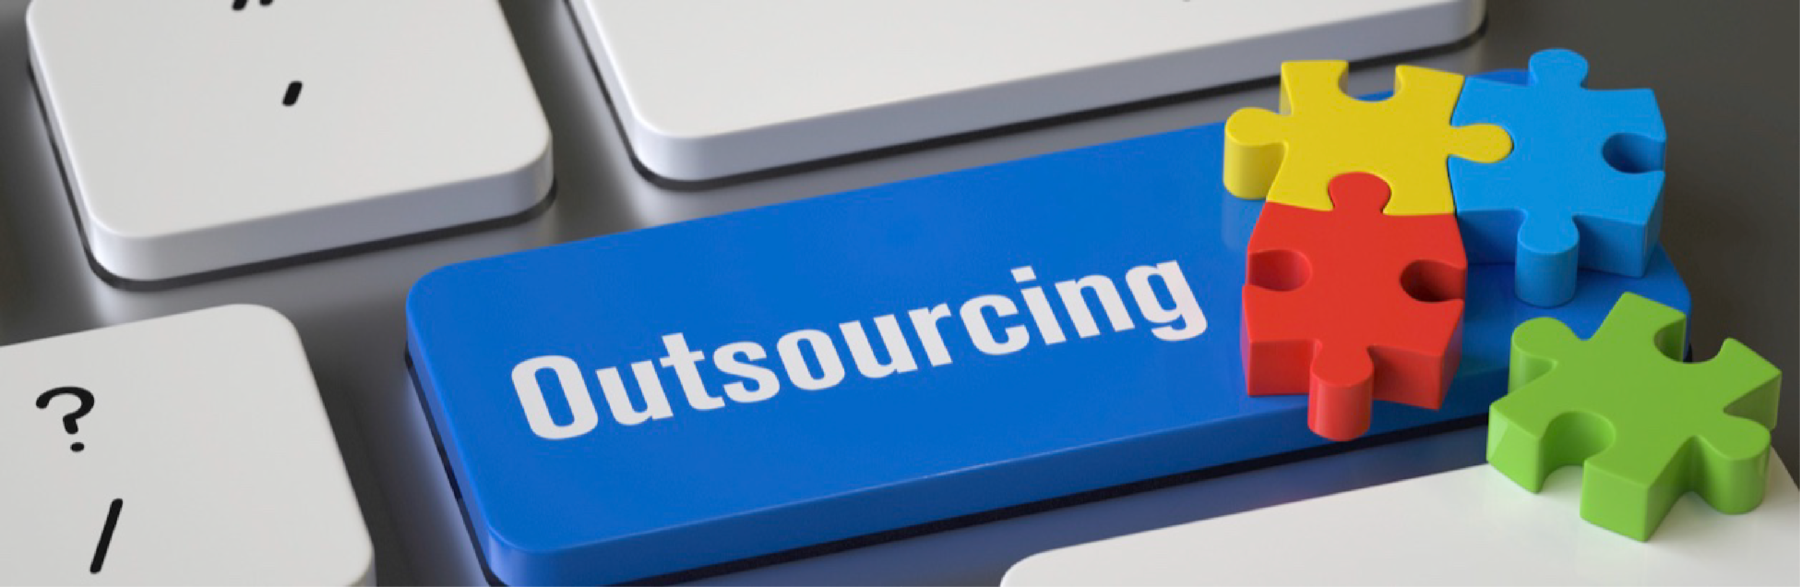 De keuze voor outsourcing is gemaakt, maar hoe nu verder?